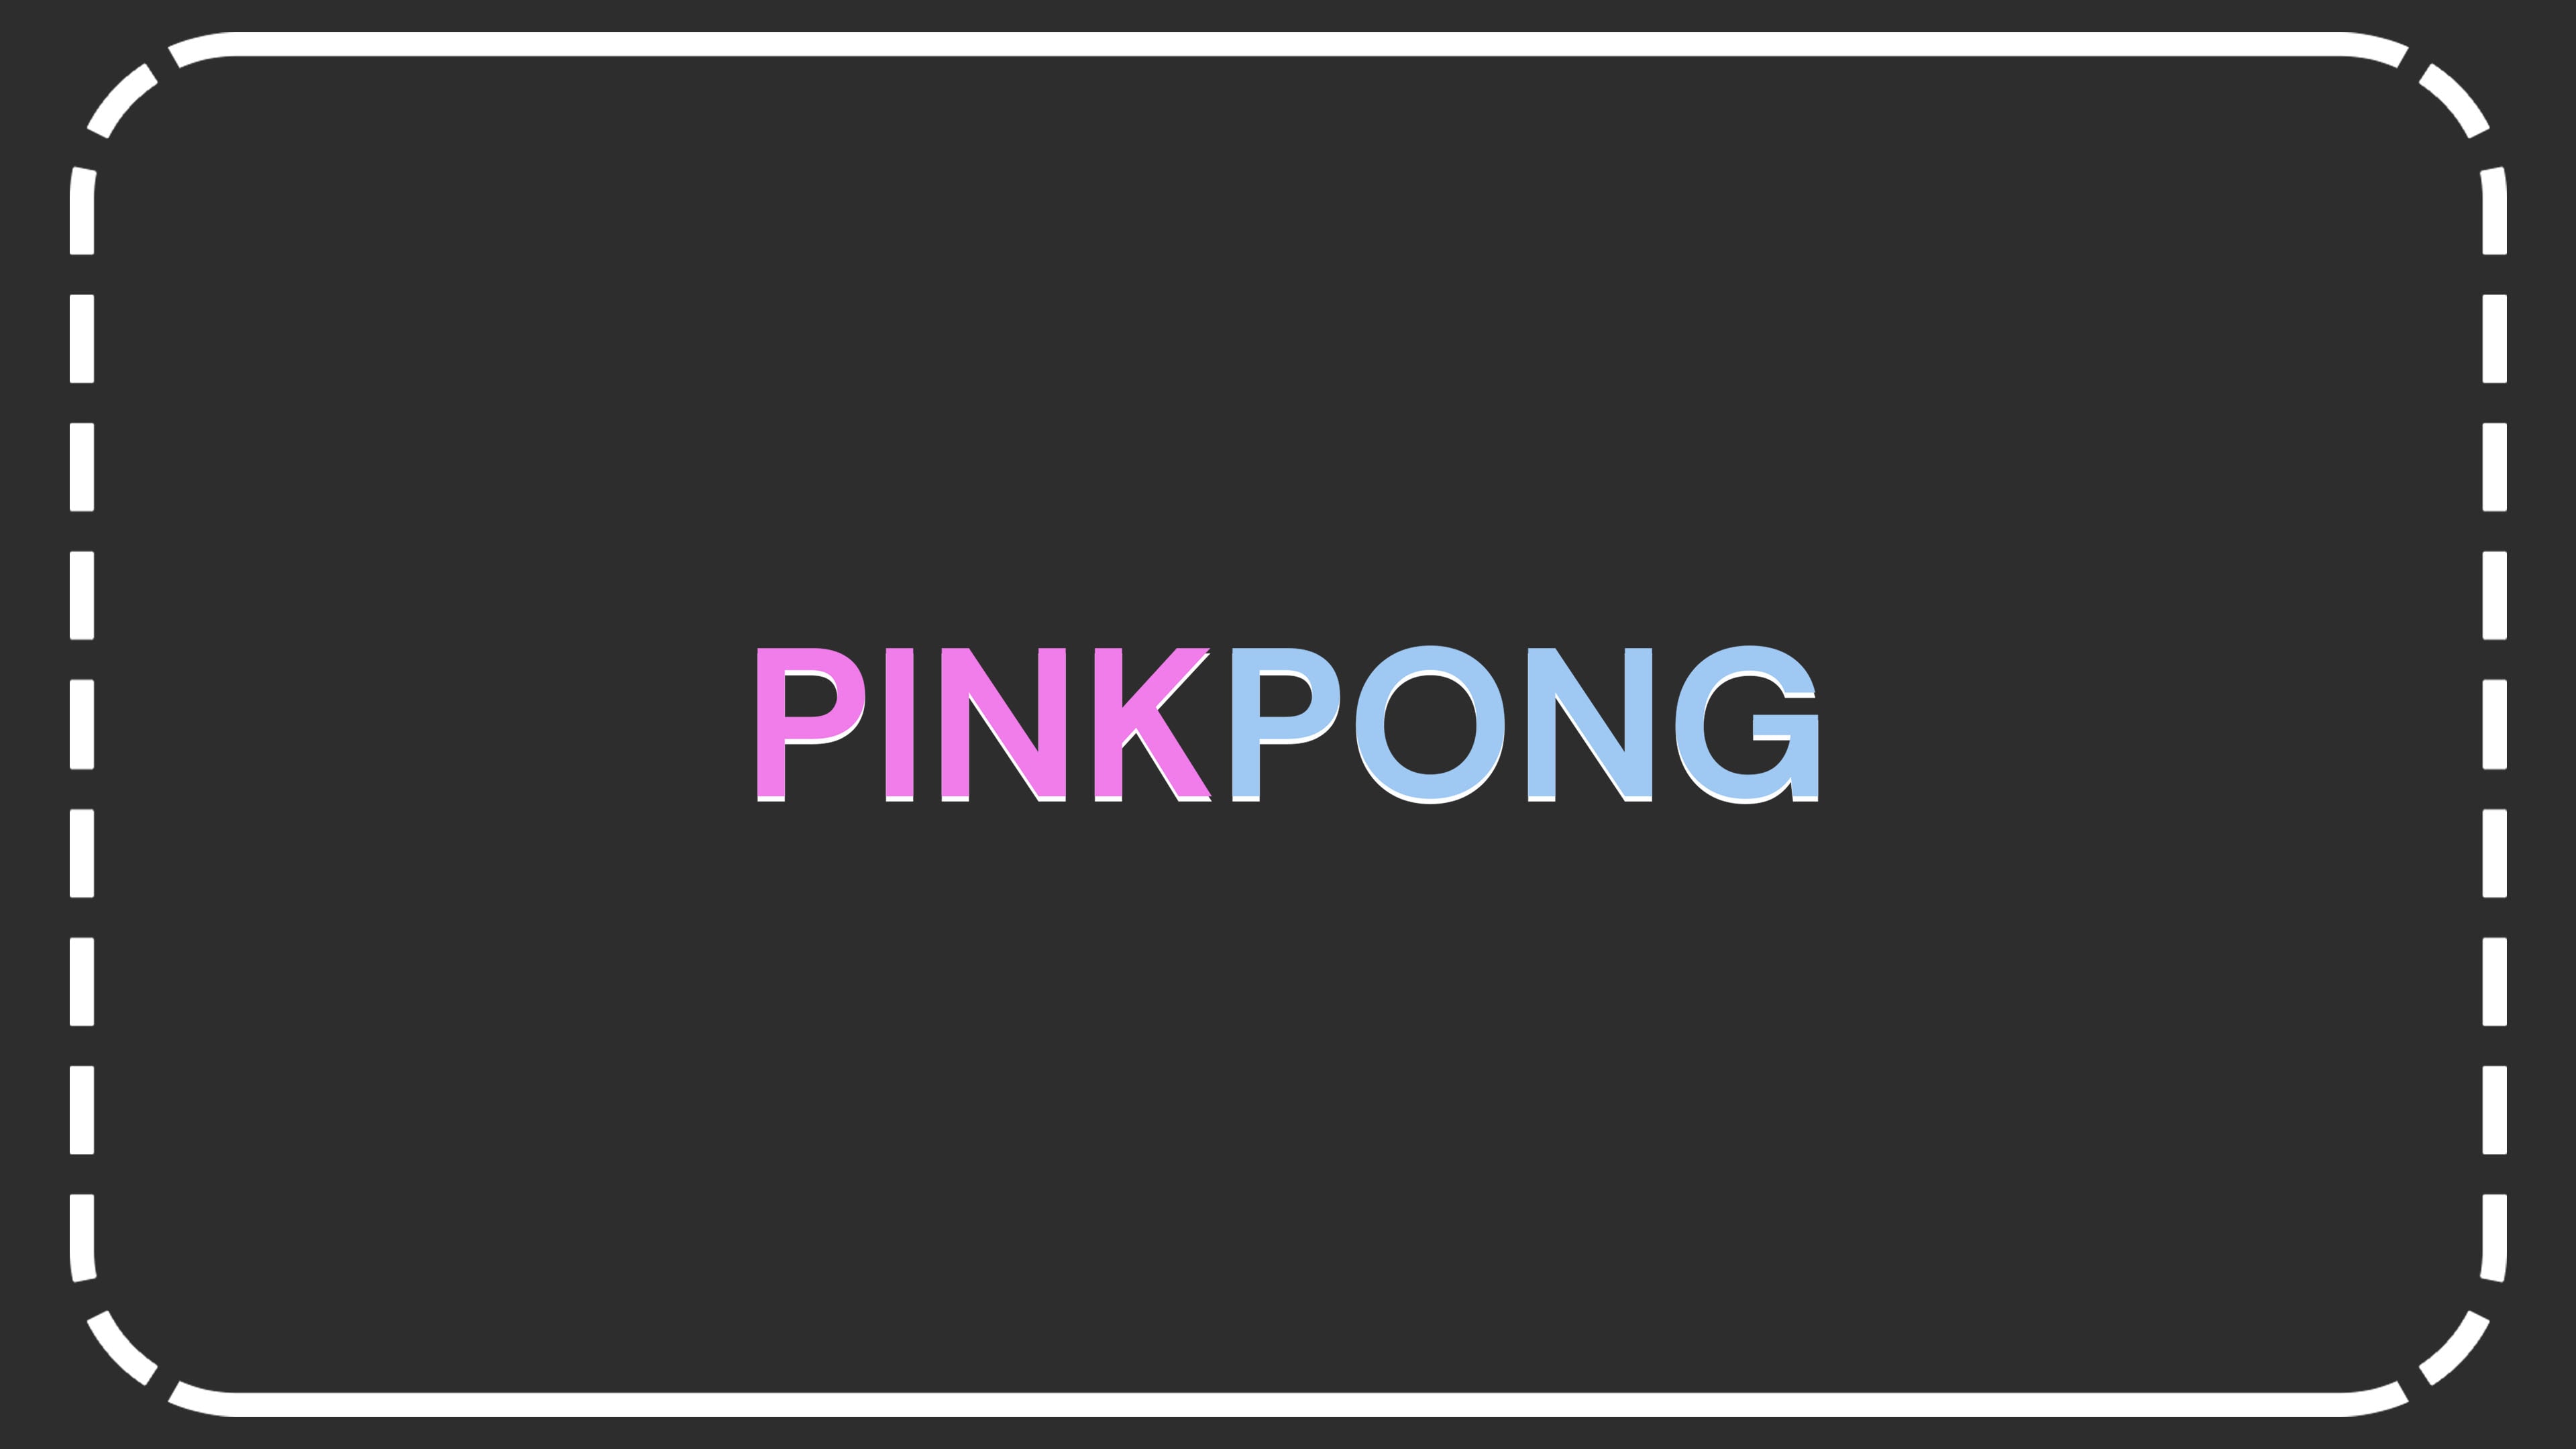 Pink Pong (영어)